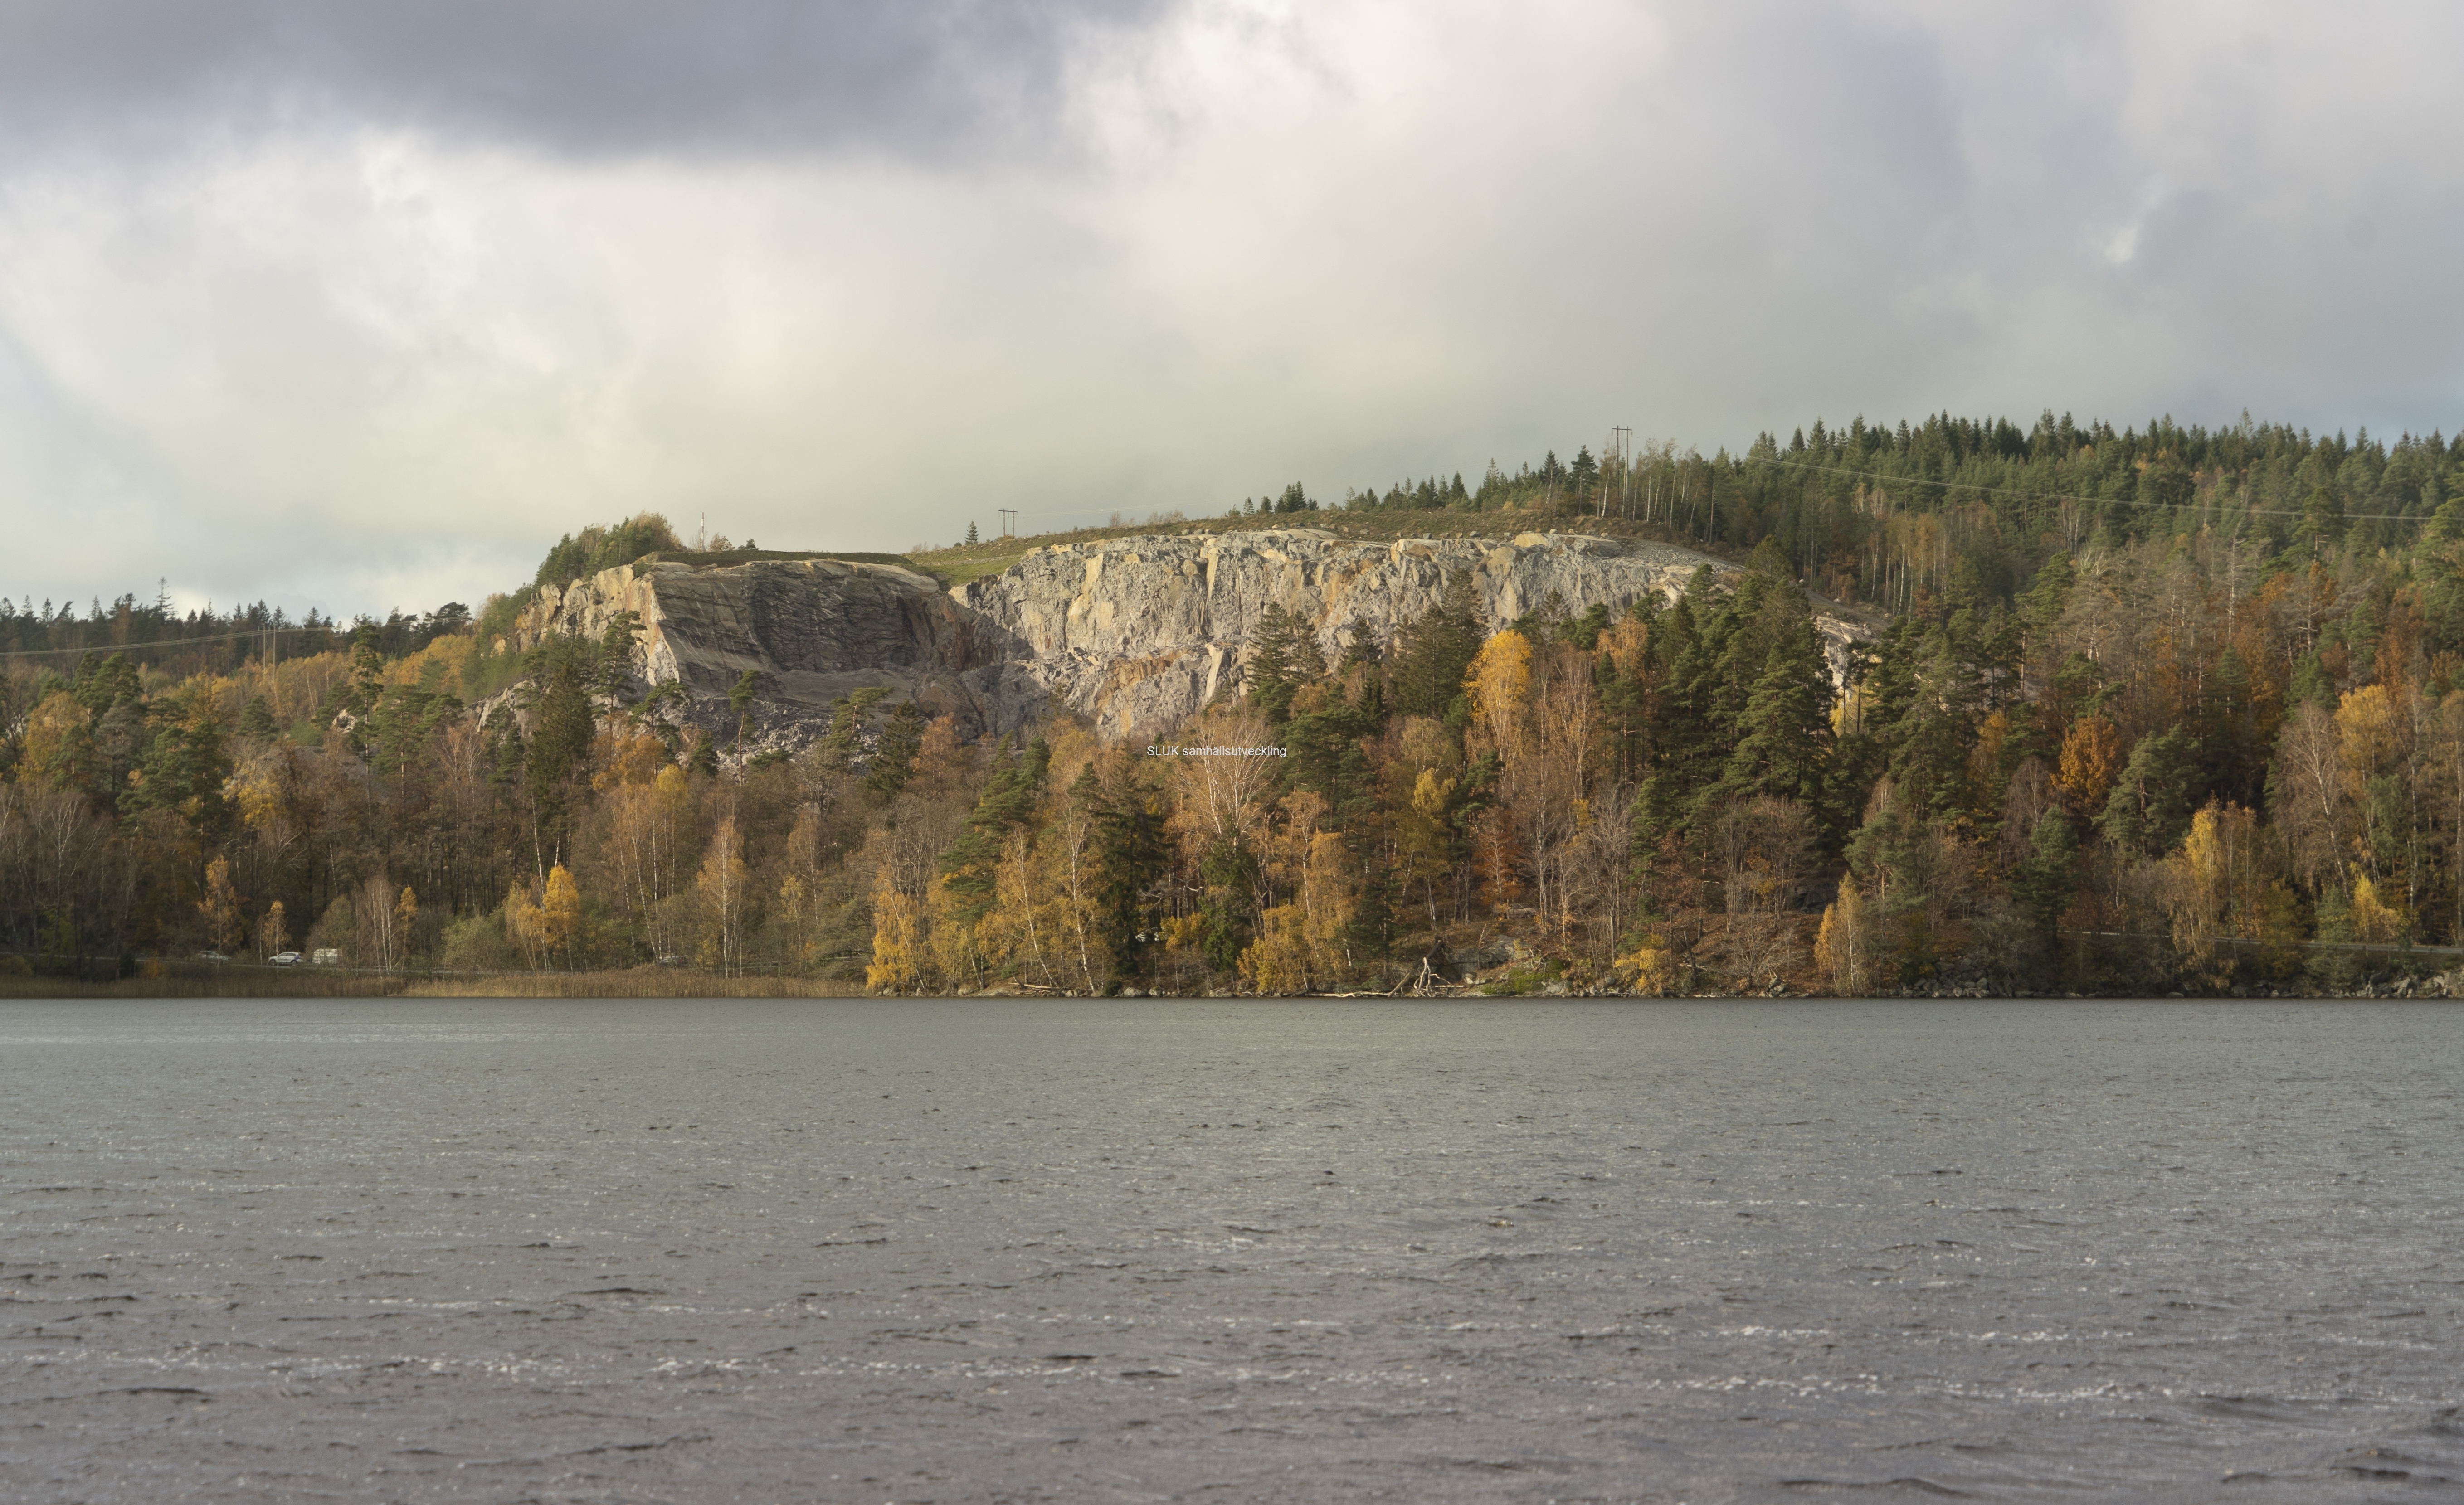 Från Långenäs, kan man se stenbrottet i Mölnlycke på andra sidan Landvettersjön. Kan det vara nedanför stenbrottet som trästaden Wendelsstrand byggs?